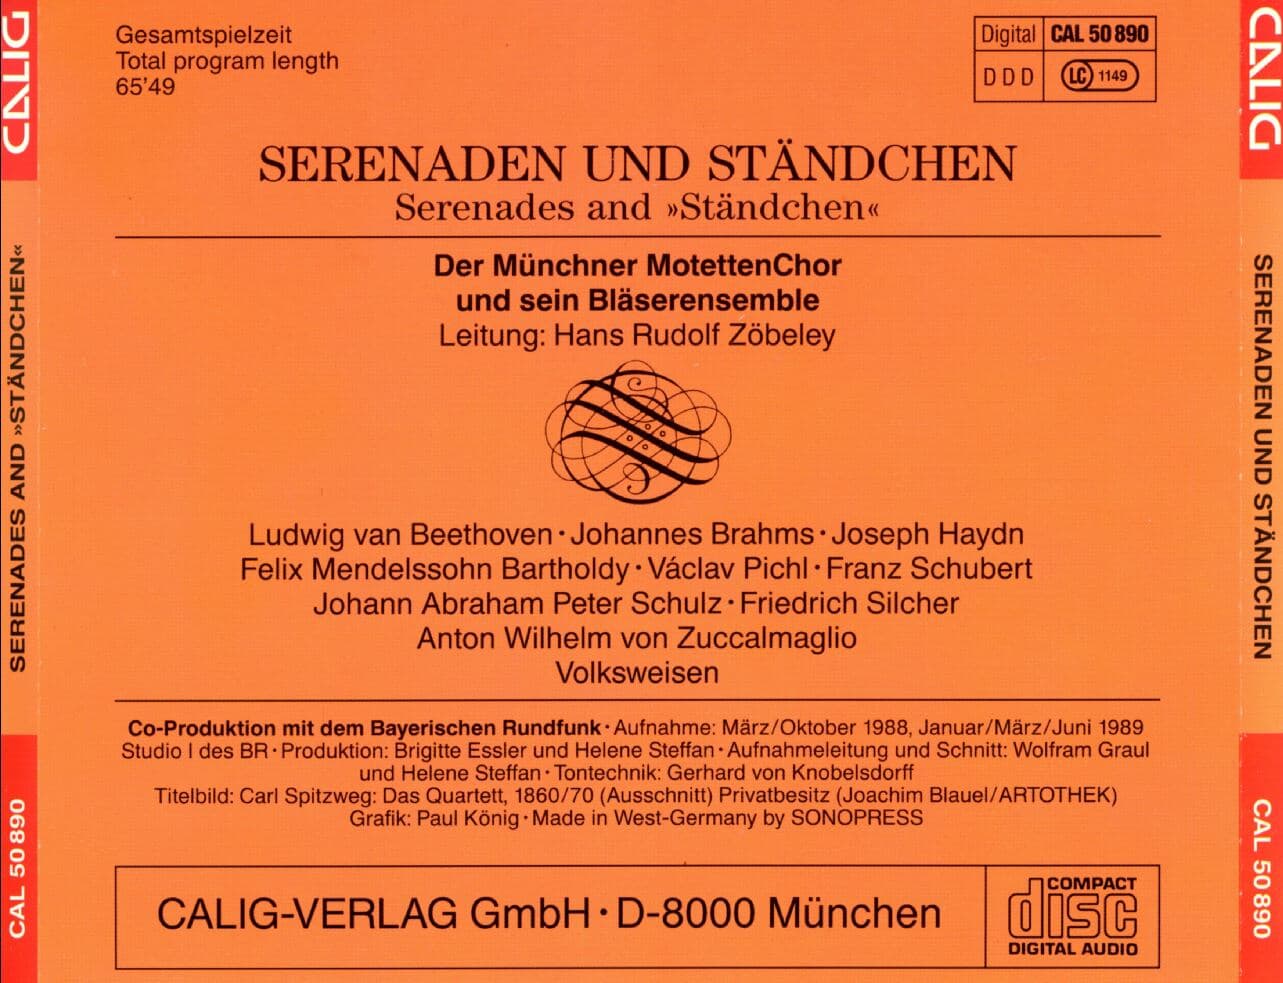 한스 루돌프 죄벨리 - Hans Rudolf Zobeley - Serenaden Und Standchen [독일발매]